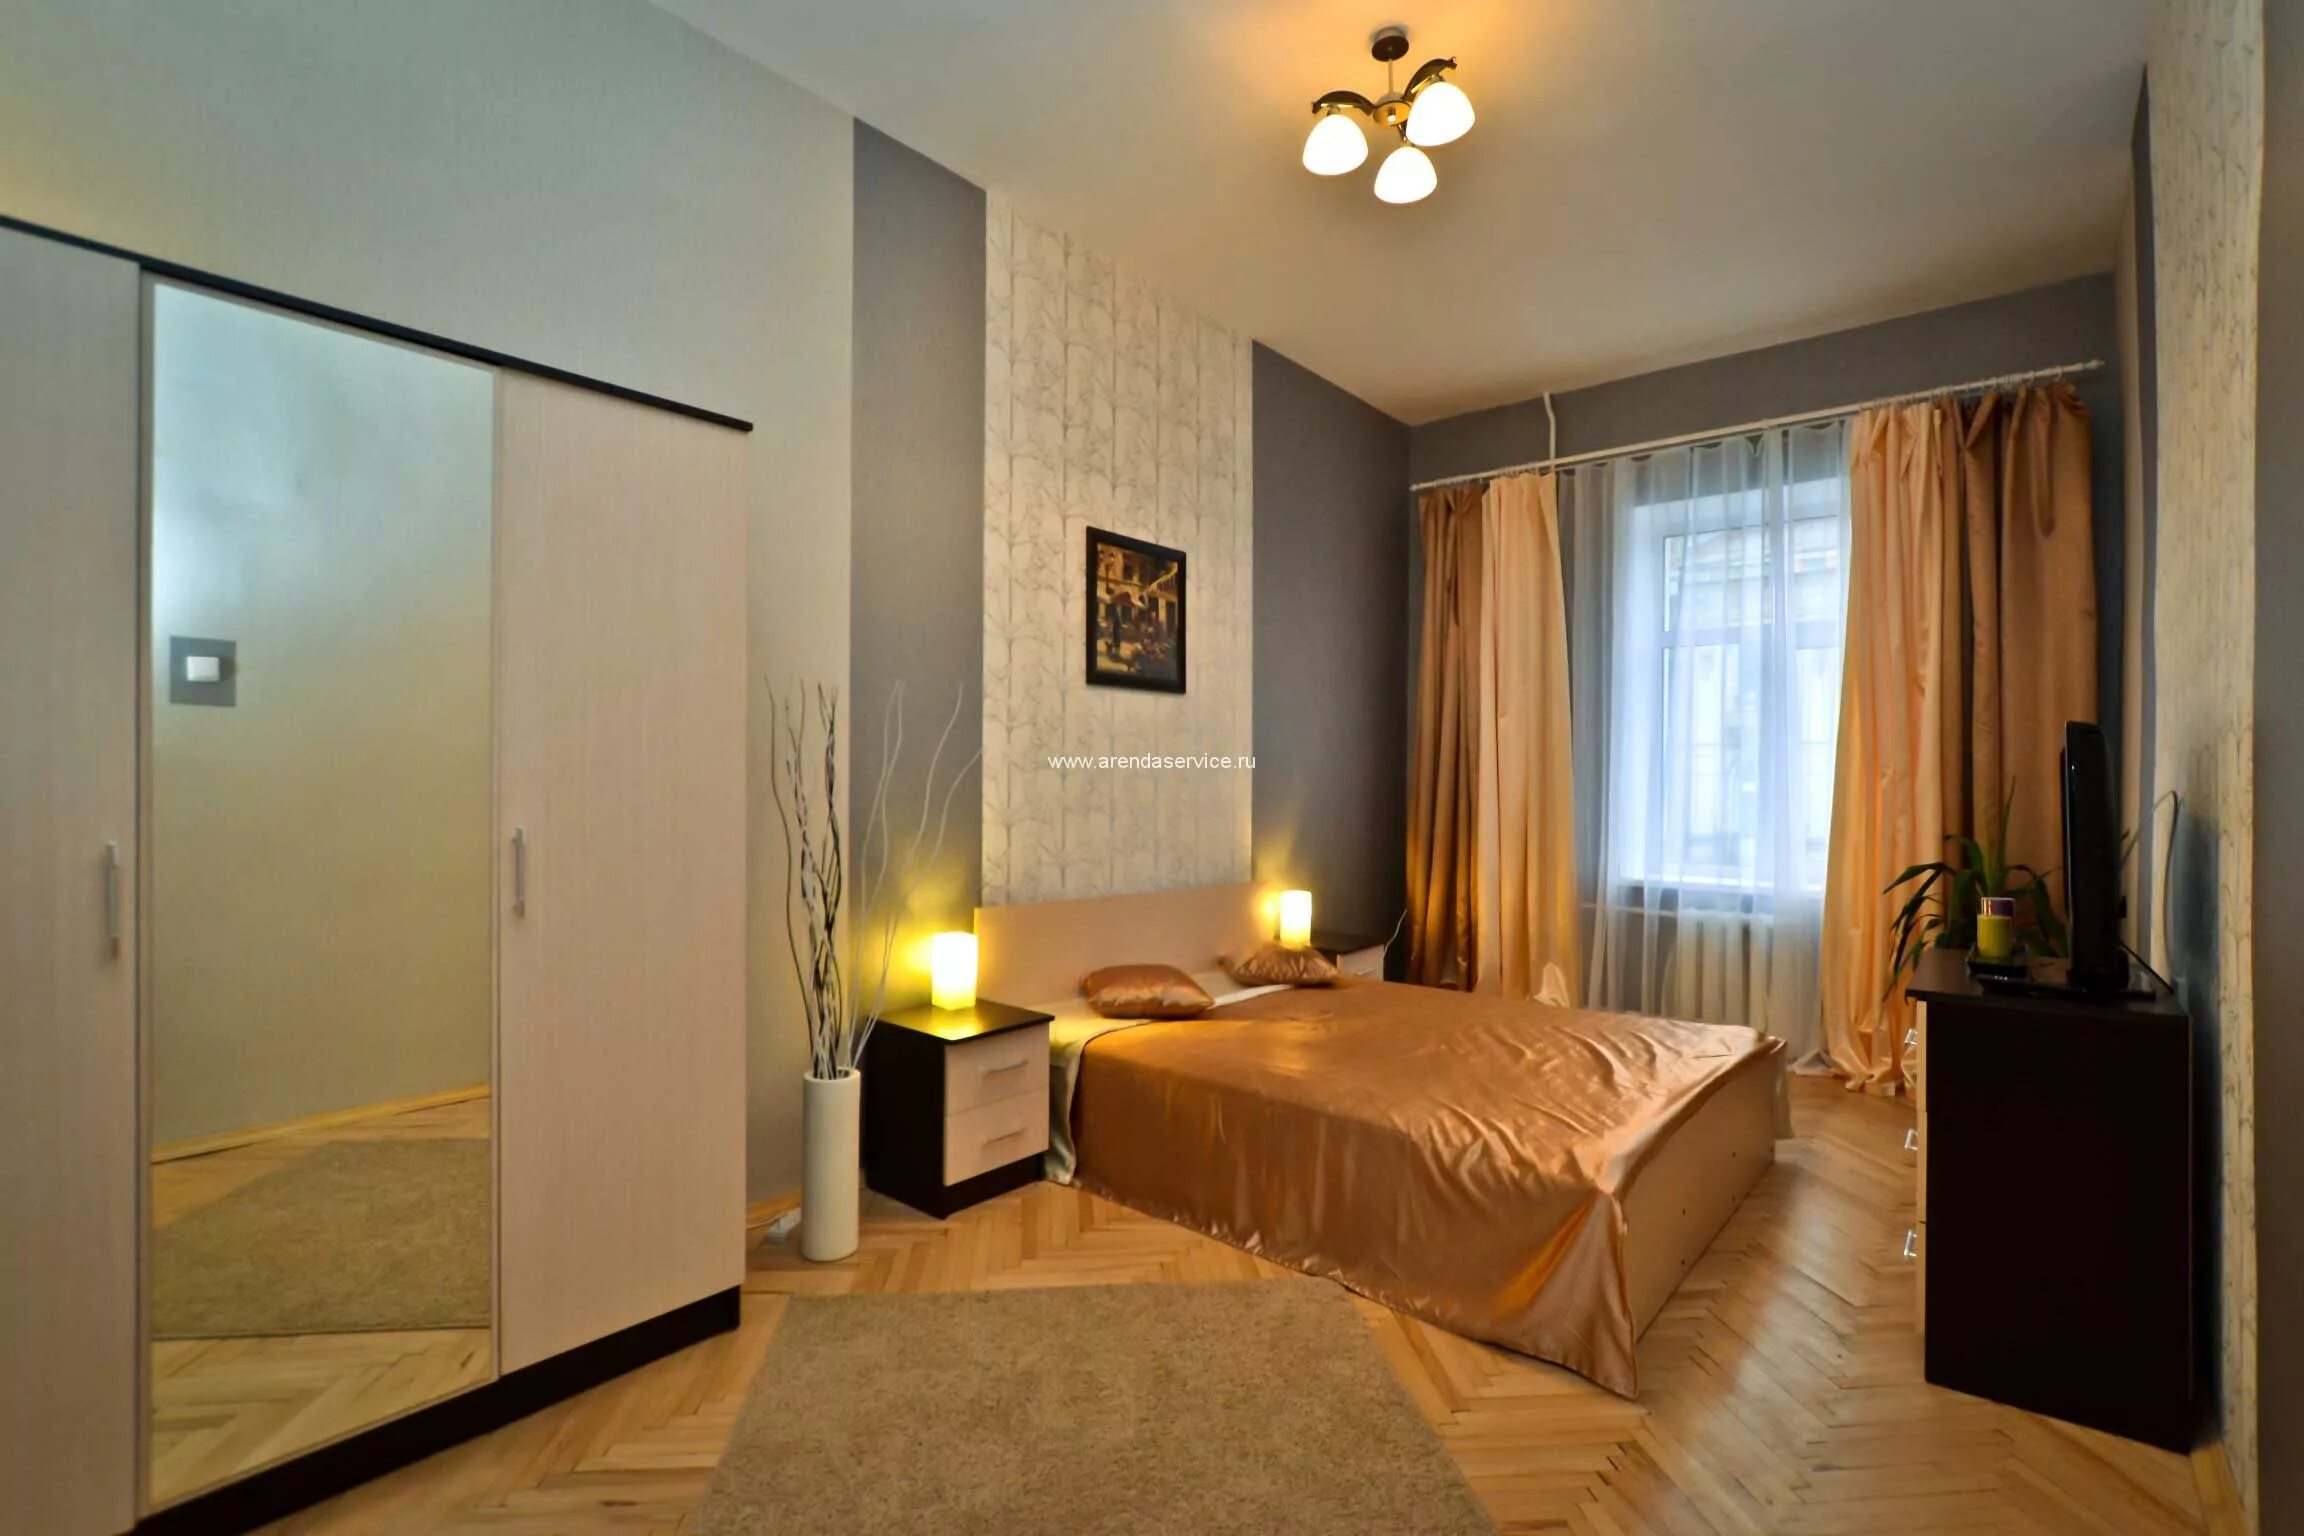 Продажа квартира двух комнаты. Комната за сутки. Красивые квартиры в Санкт-Петербурге. Комната в Санкт Петербурге. Новая квартира.